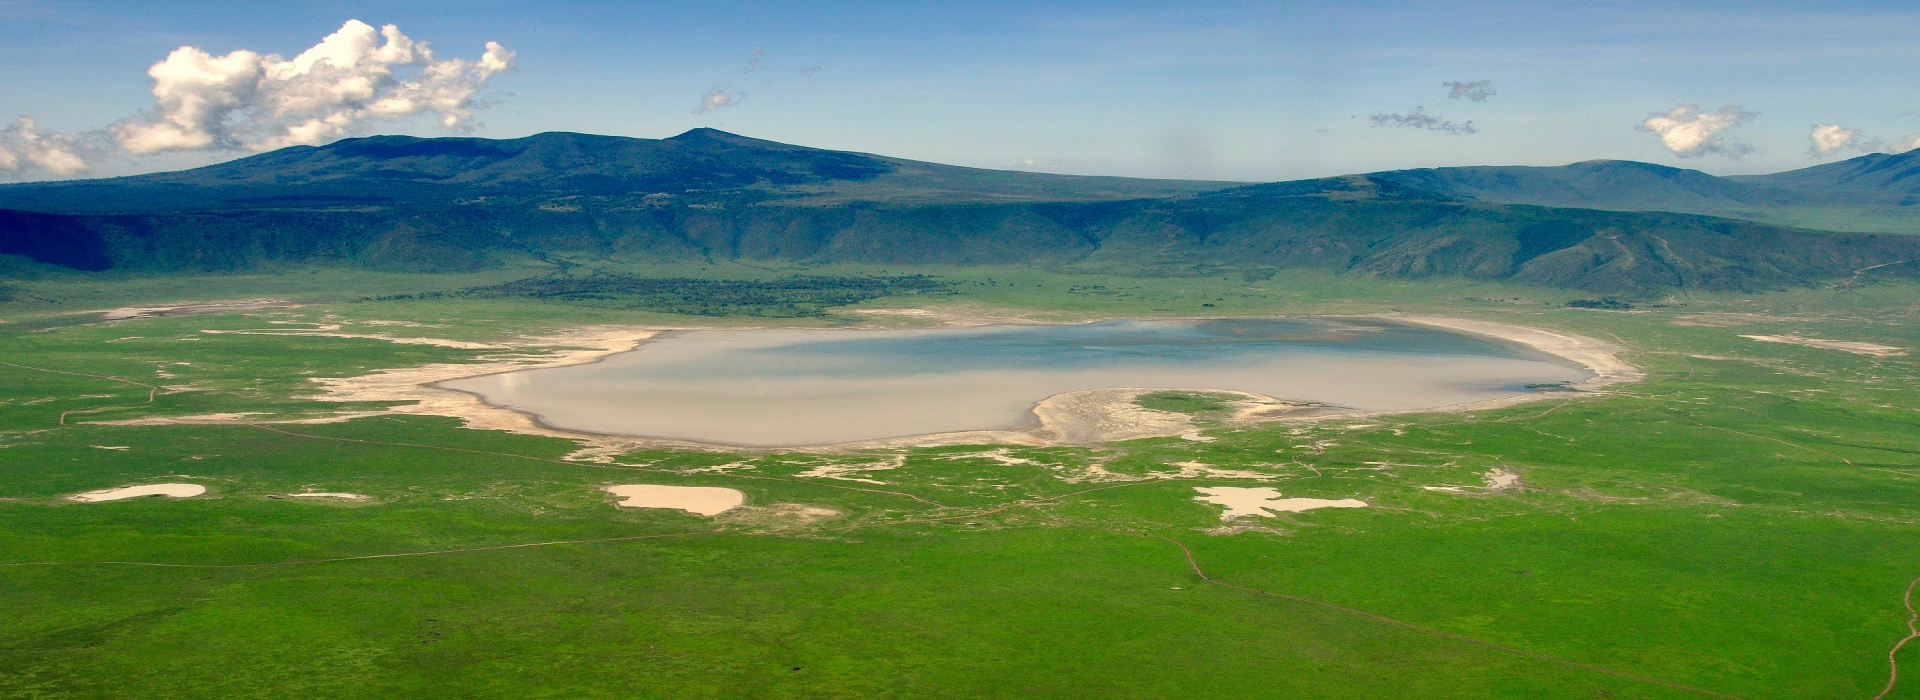 Background Image for Ngorongoro Conservation Area